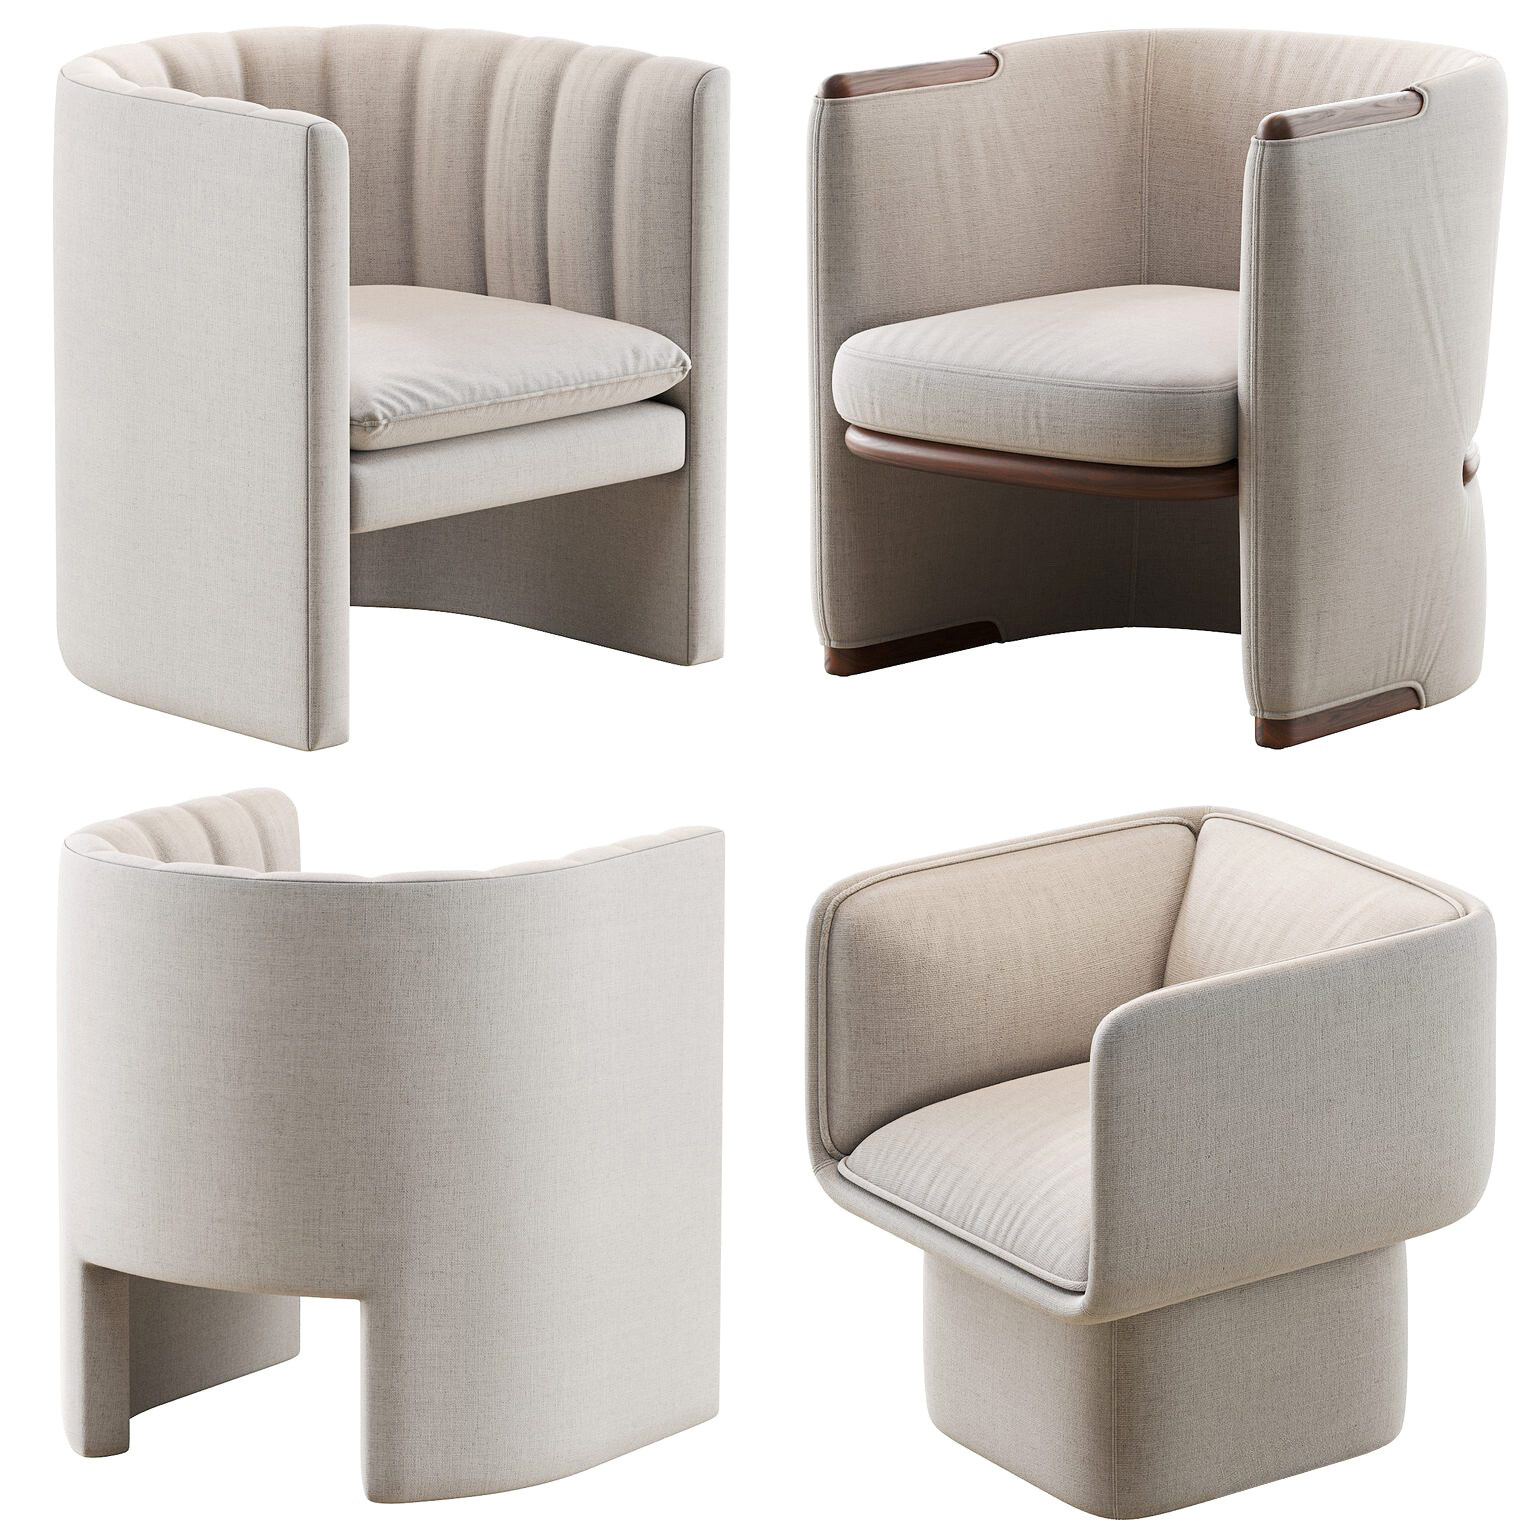 07Giorgetti 现代布艺休闲椅组合,单人椅,沙发椅,椅子,3d模型下载